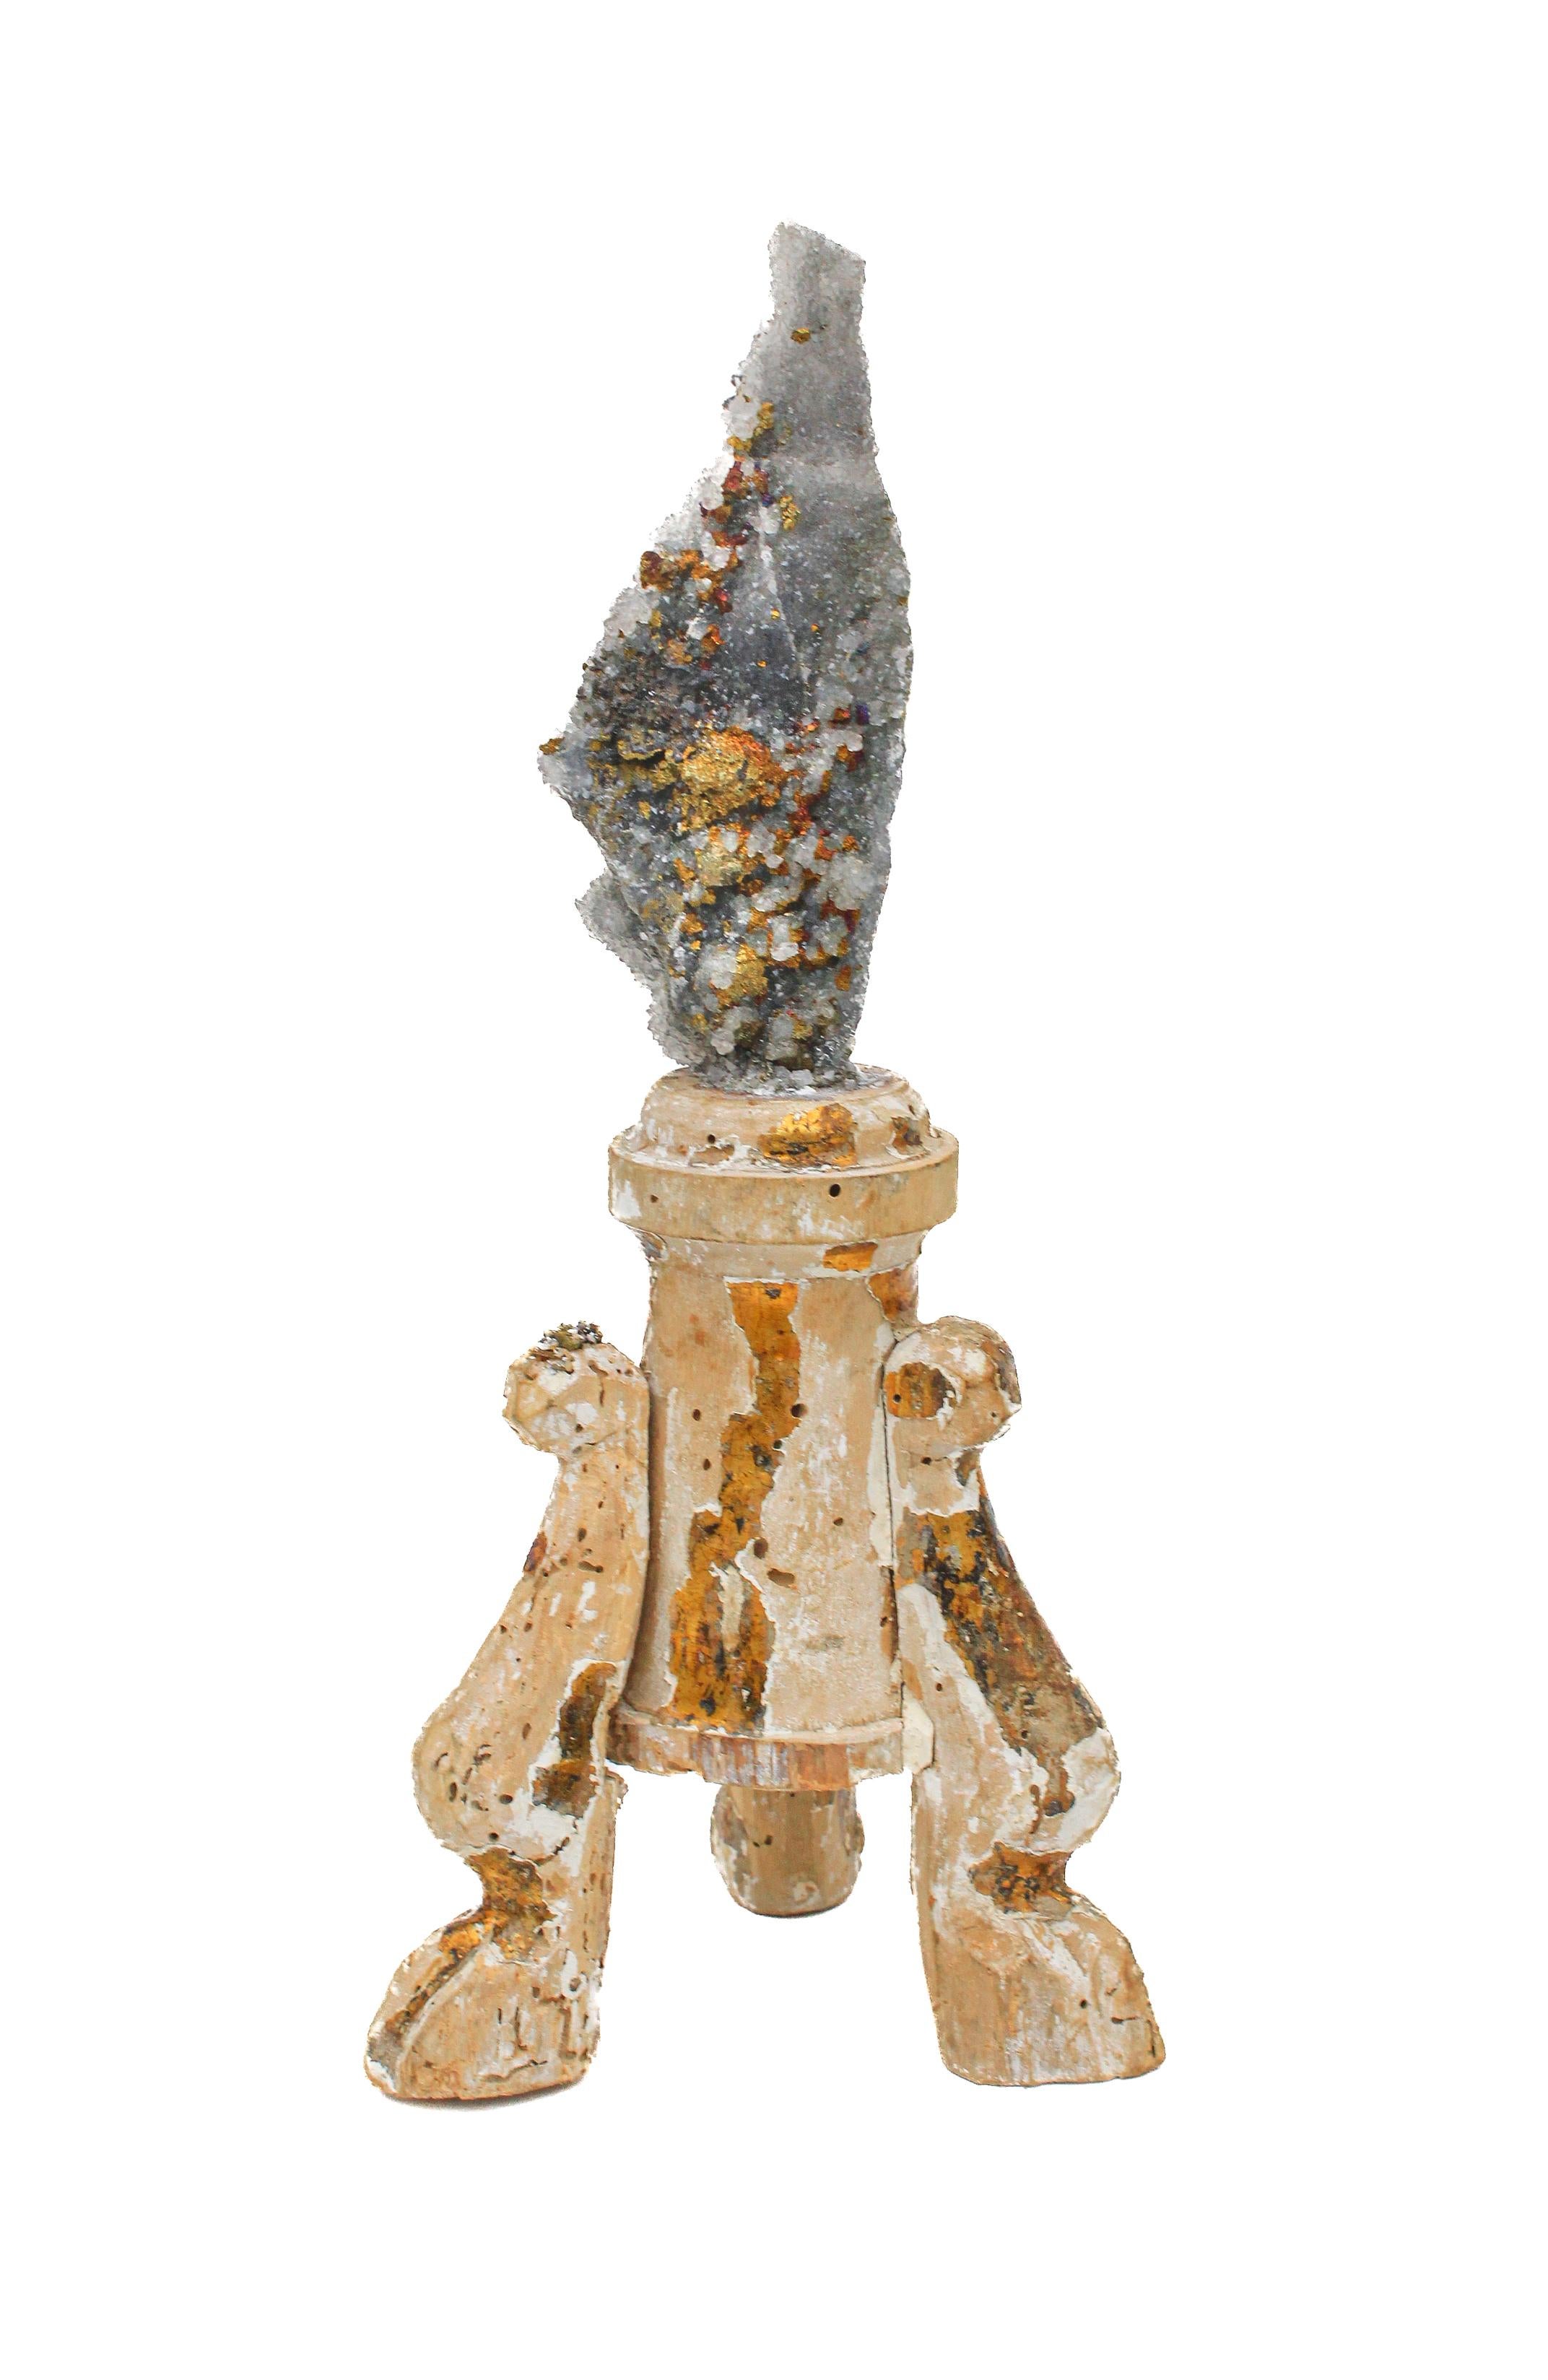 fragment italien du 17e siècle monté avec de la chalcopyrite dans une matrice de cristal druze.

Ce fragment faisait à l'origine partie d'un chandelier provenant d'une église en Italie. Elle est abîmée par le temps mais possède encore la feuille